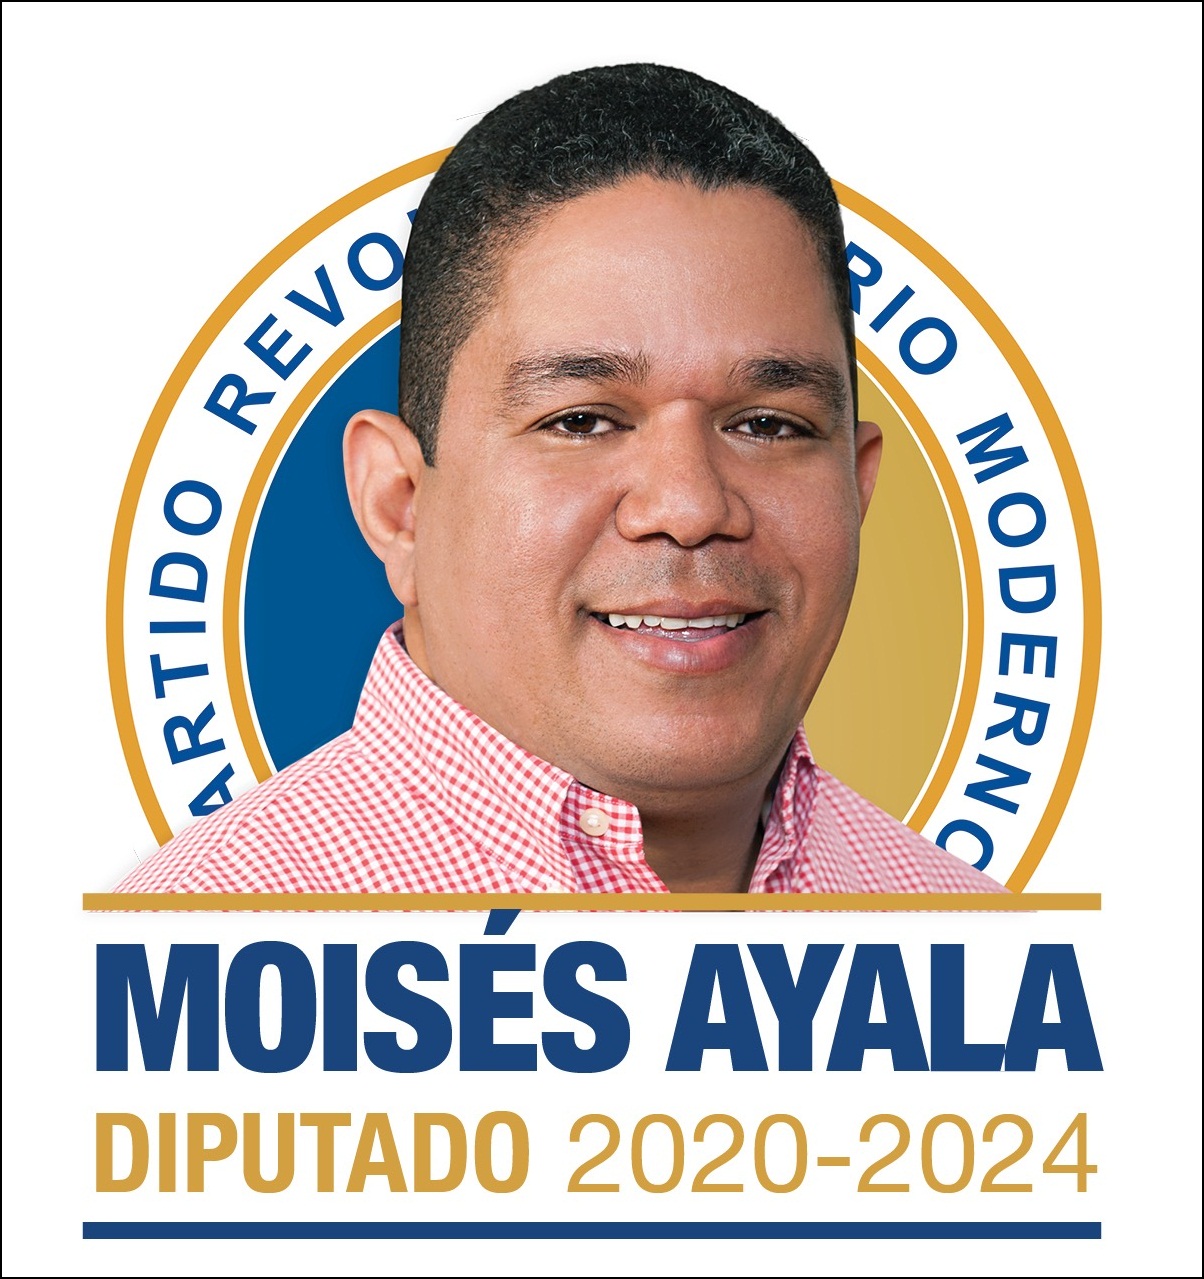 MOISES AYALA DIPUTADO 2020-2024